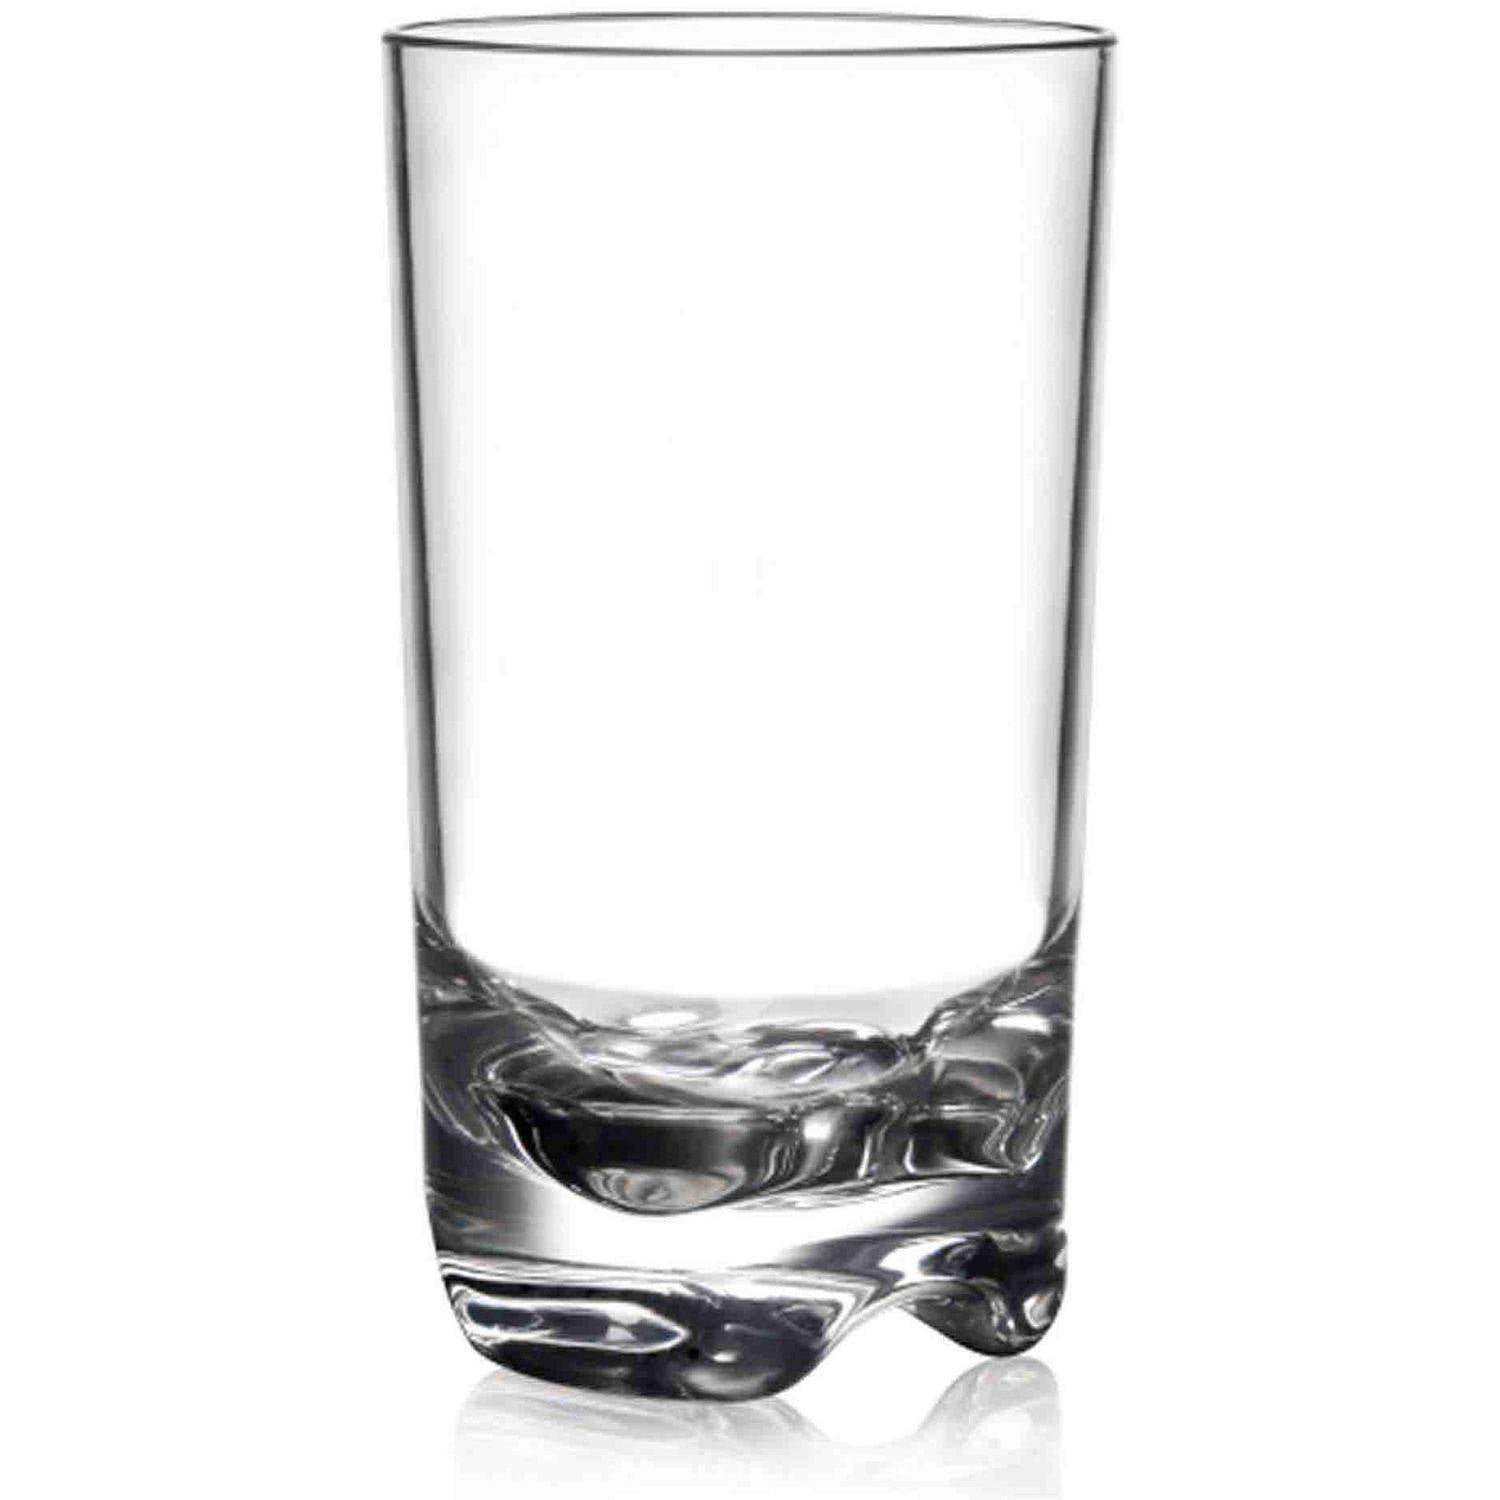 Barshine 13.35 oz. DOF Drinking Glasses (Set of 6)